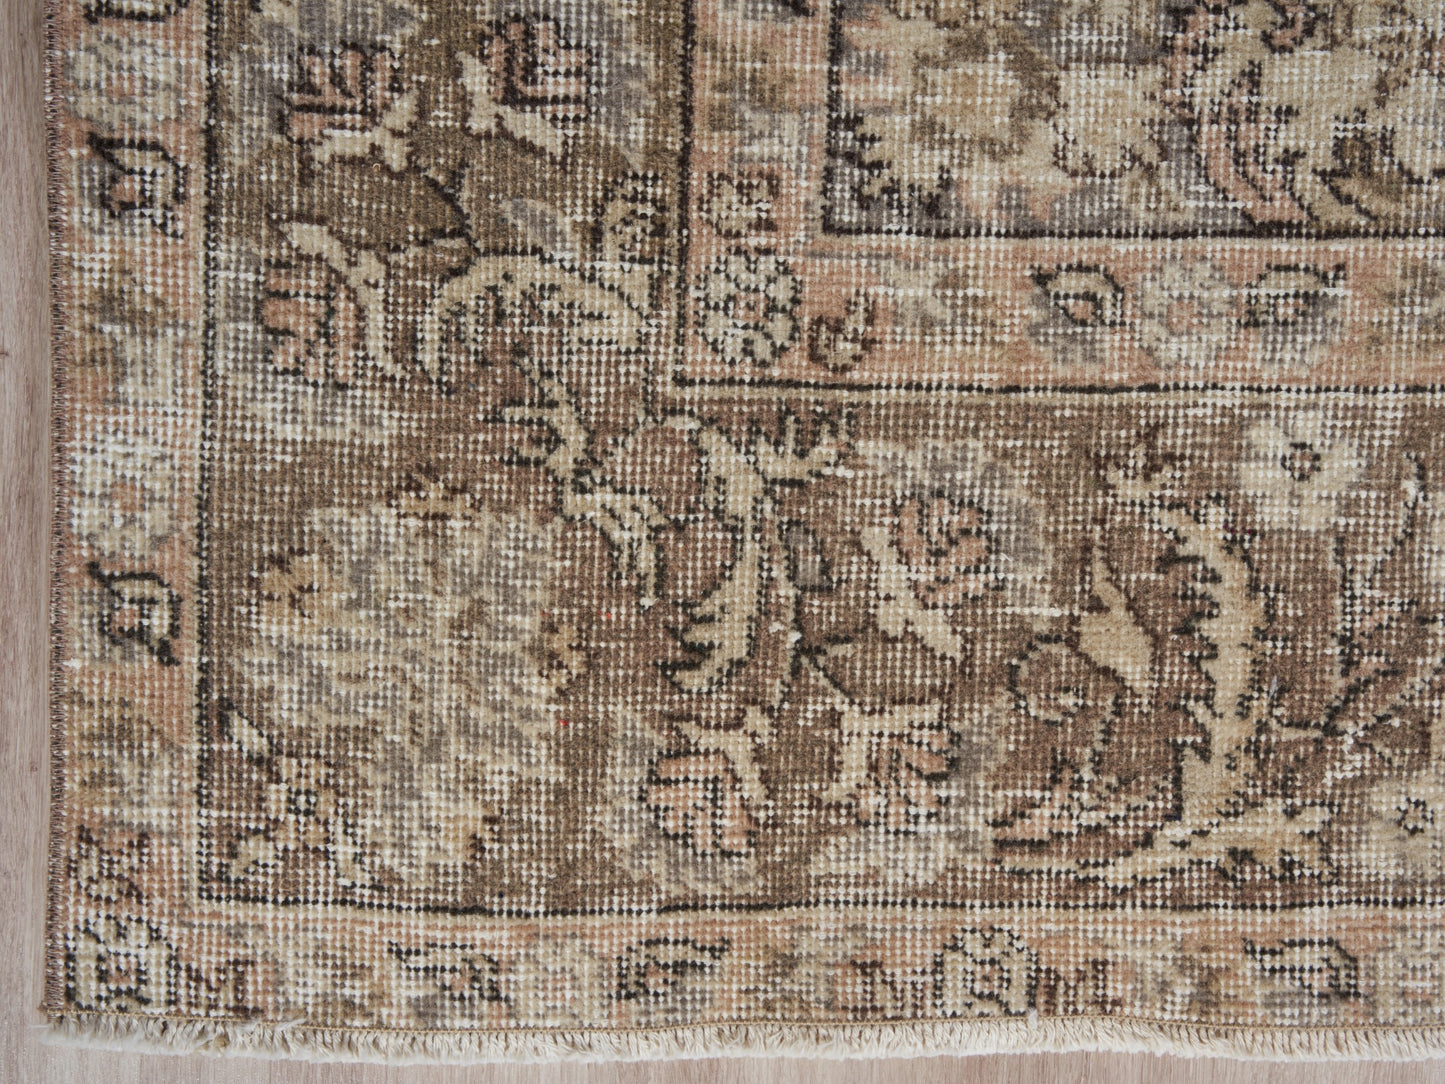 1644 - 203 x 313 cm